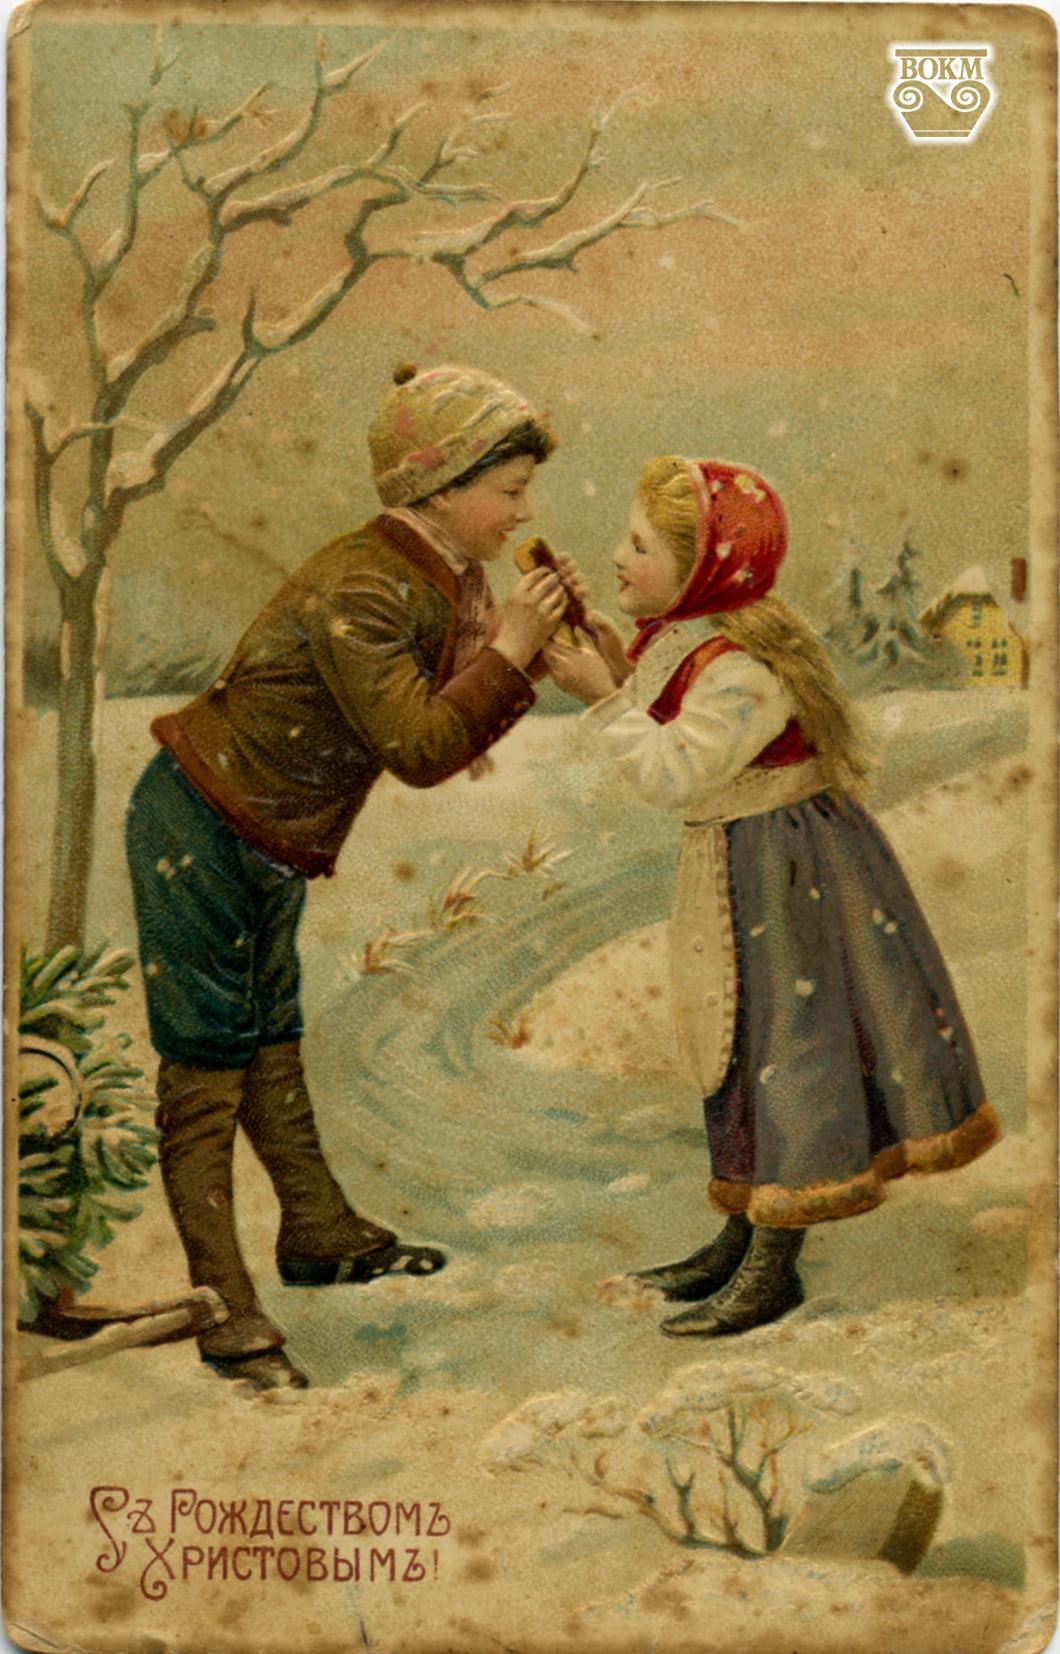 Різдвяні листівки початку минулого століття можуть побачити вінничани